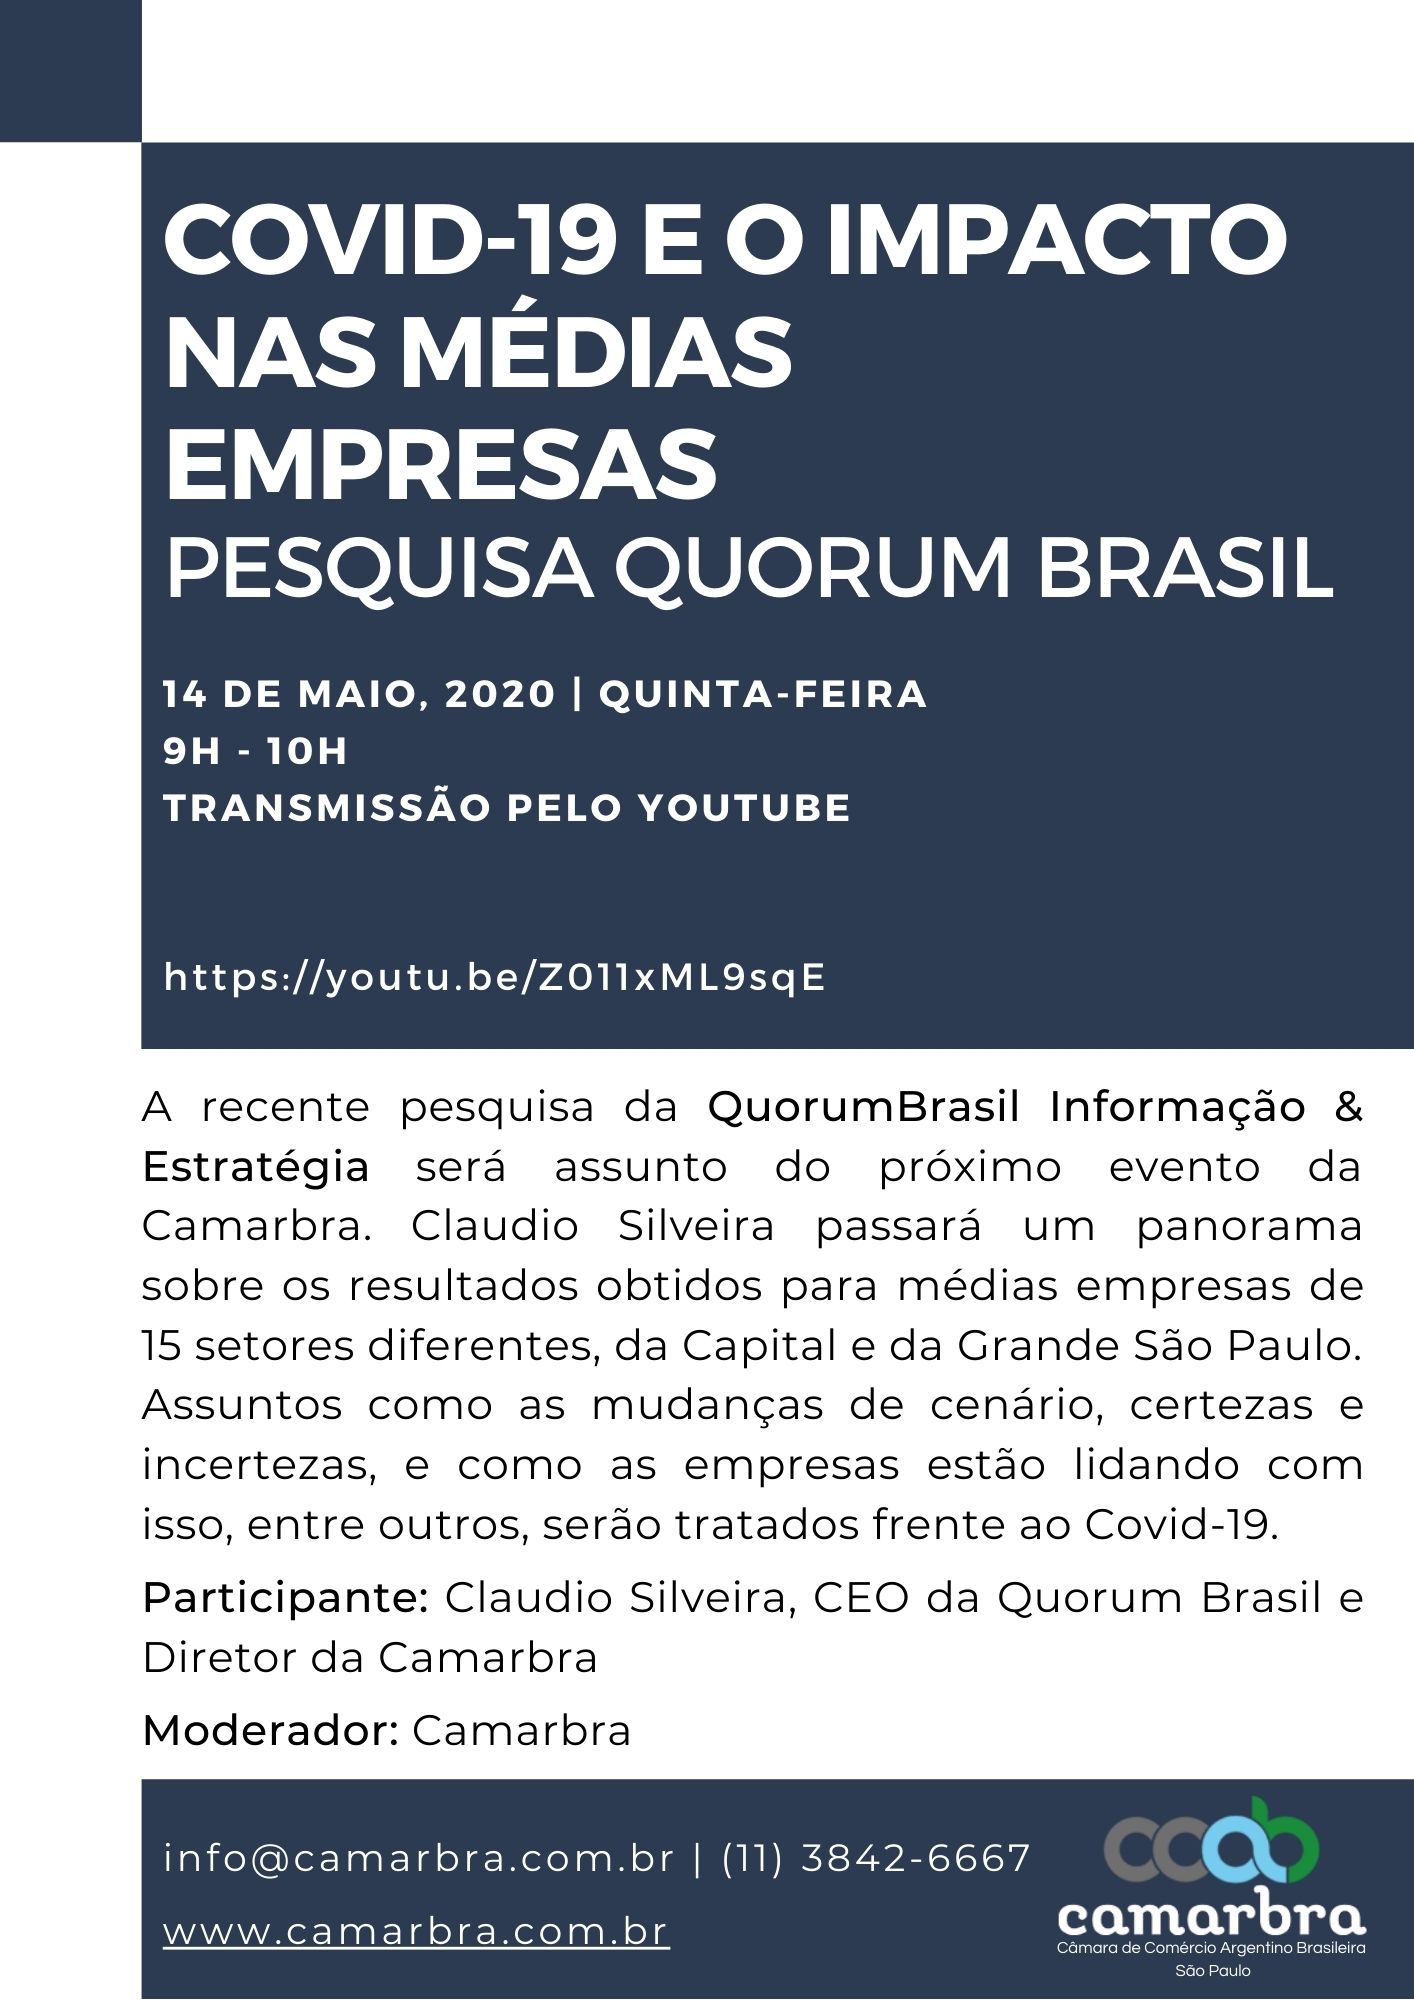 Covid-19 e o impacto nas médias empresas - Pesquisa Quorum brasil